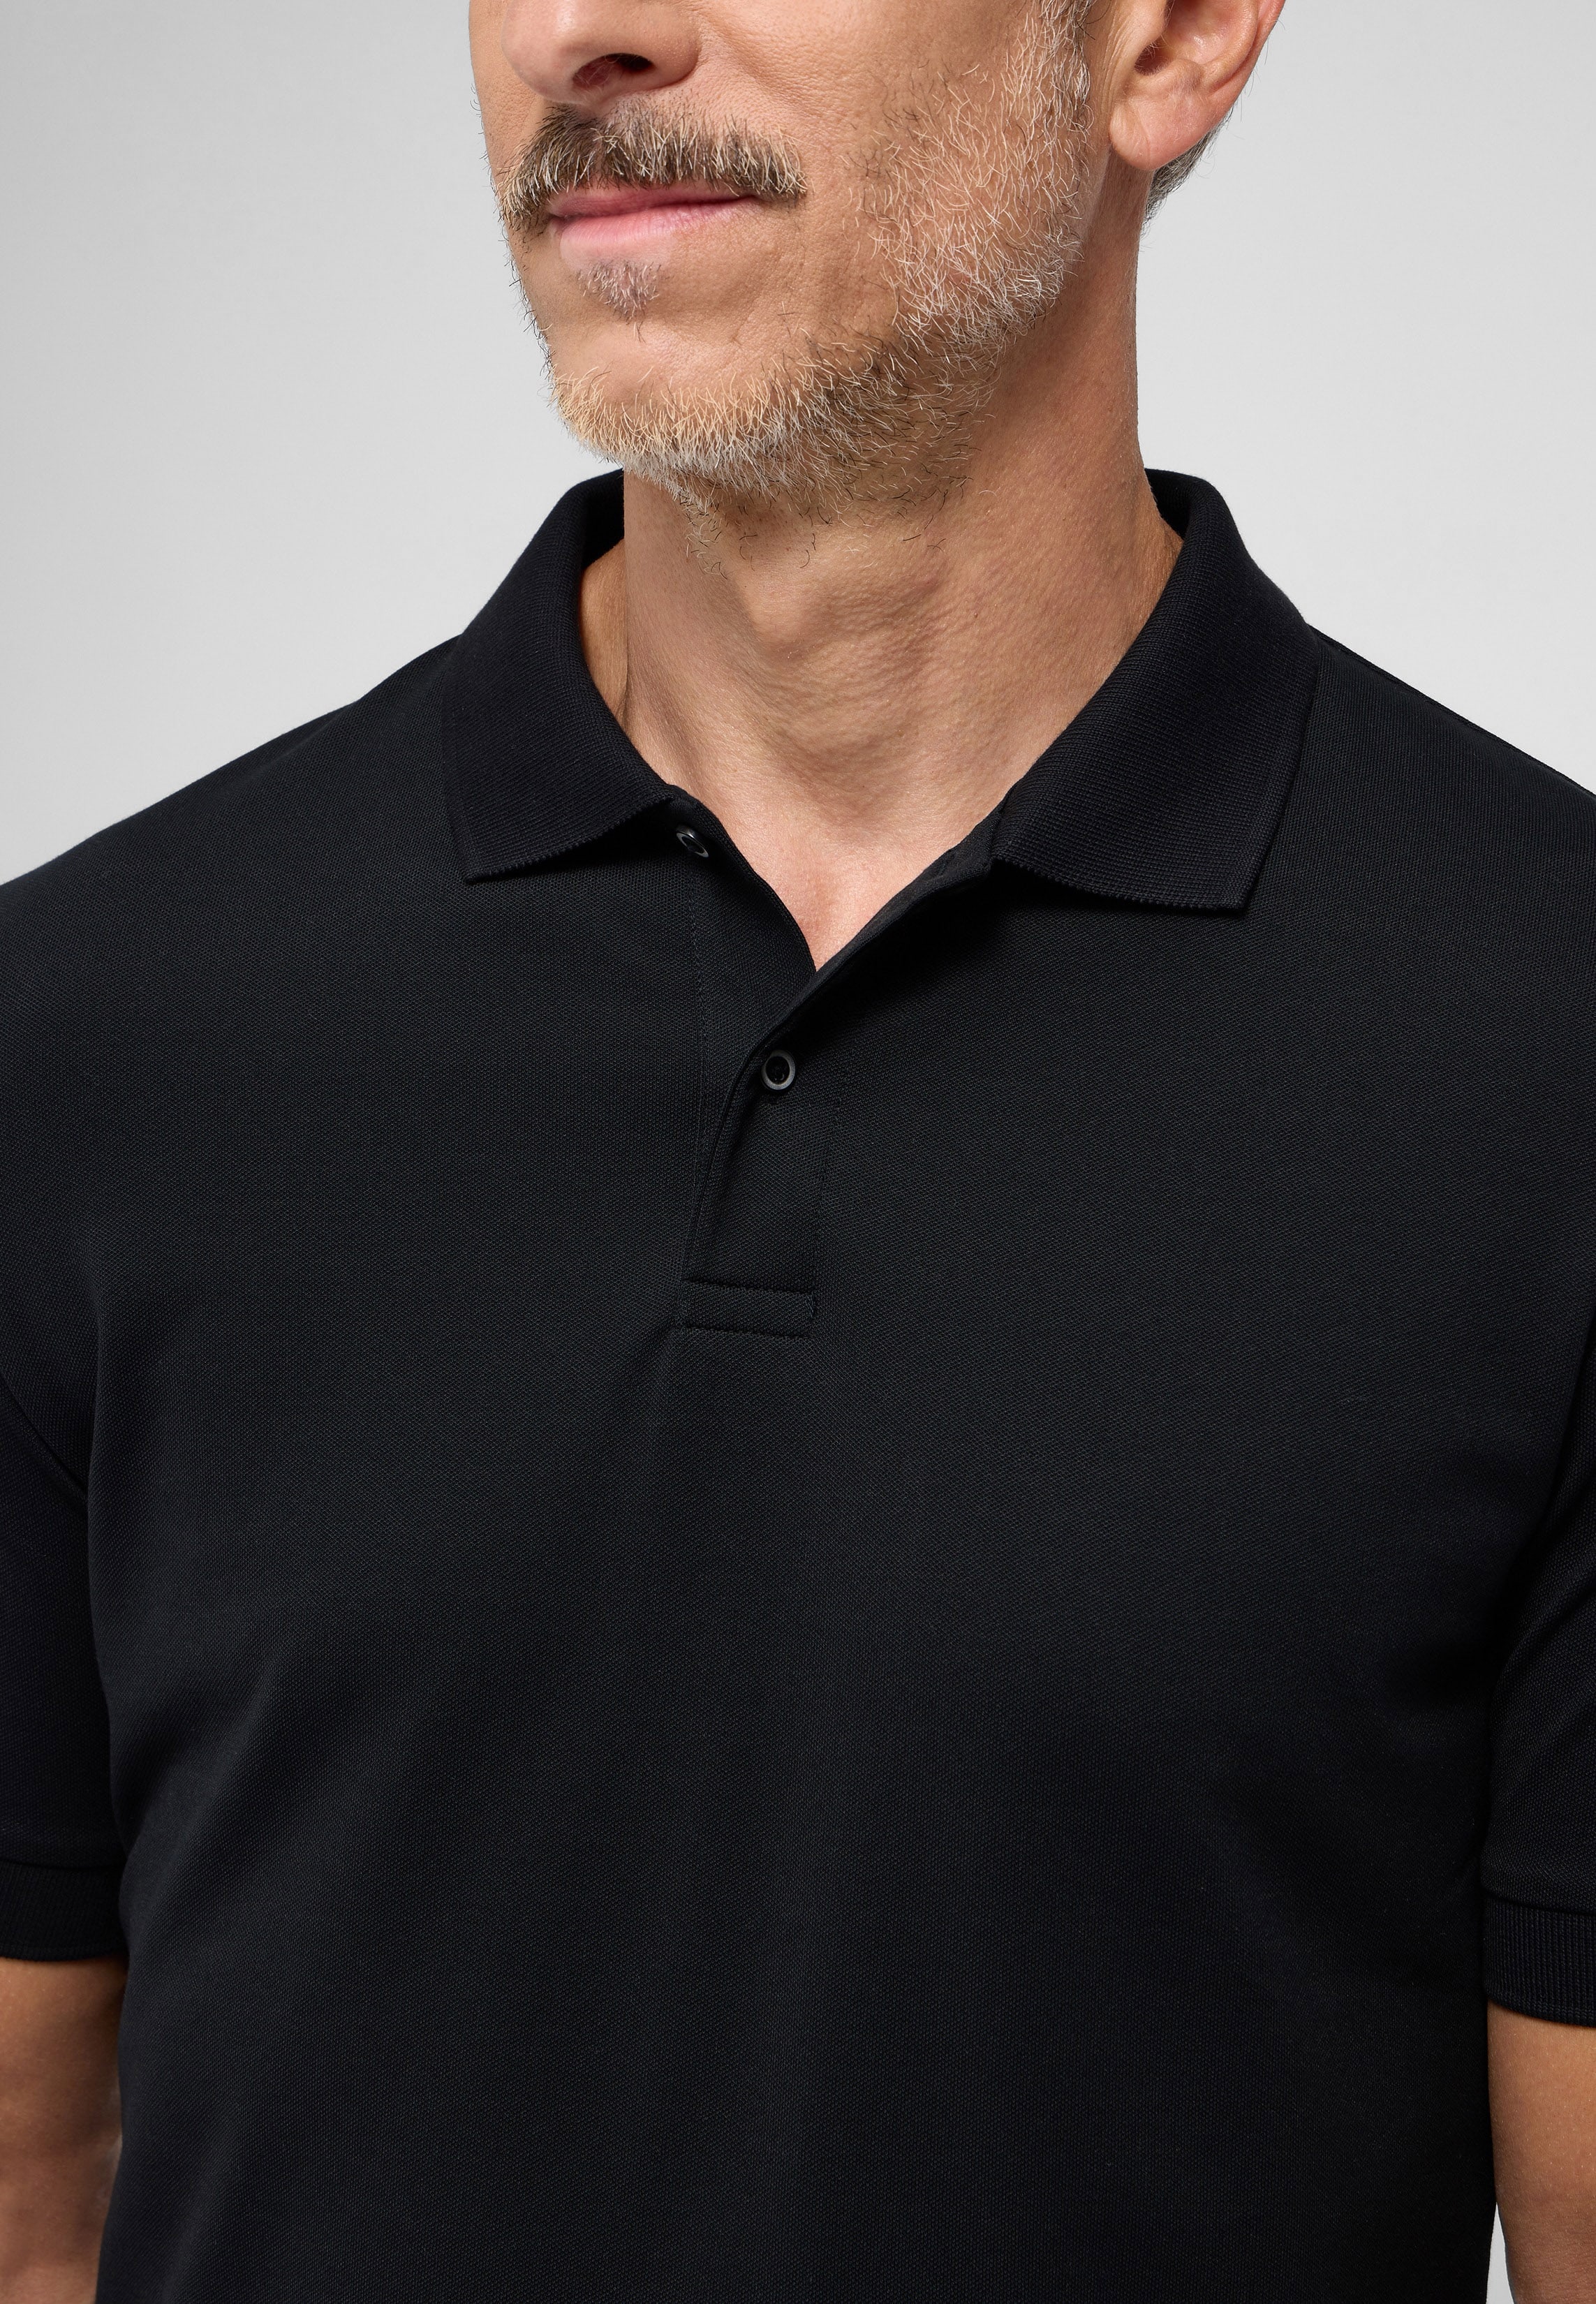 SLIM FIT Performance Shirt in zwart vlakte